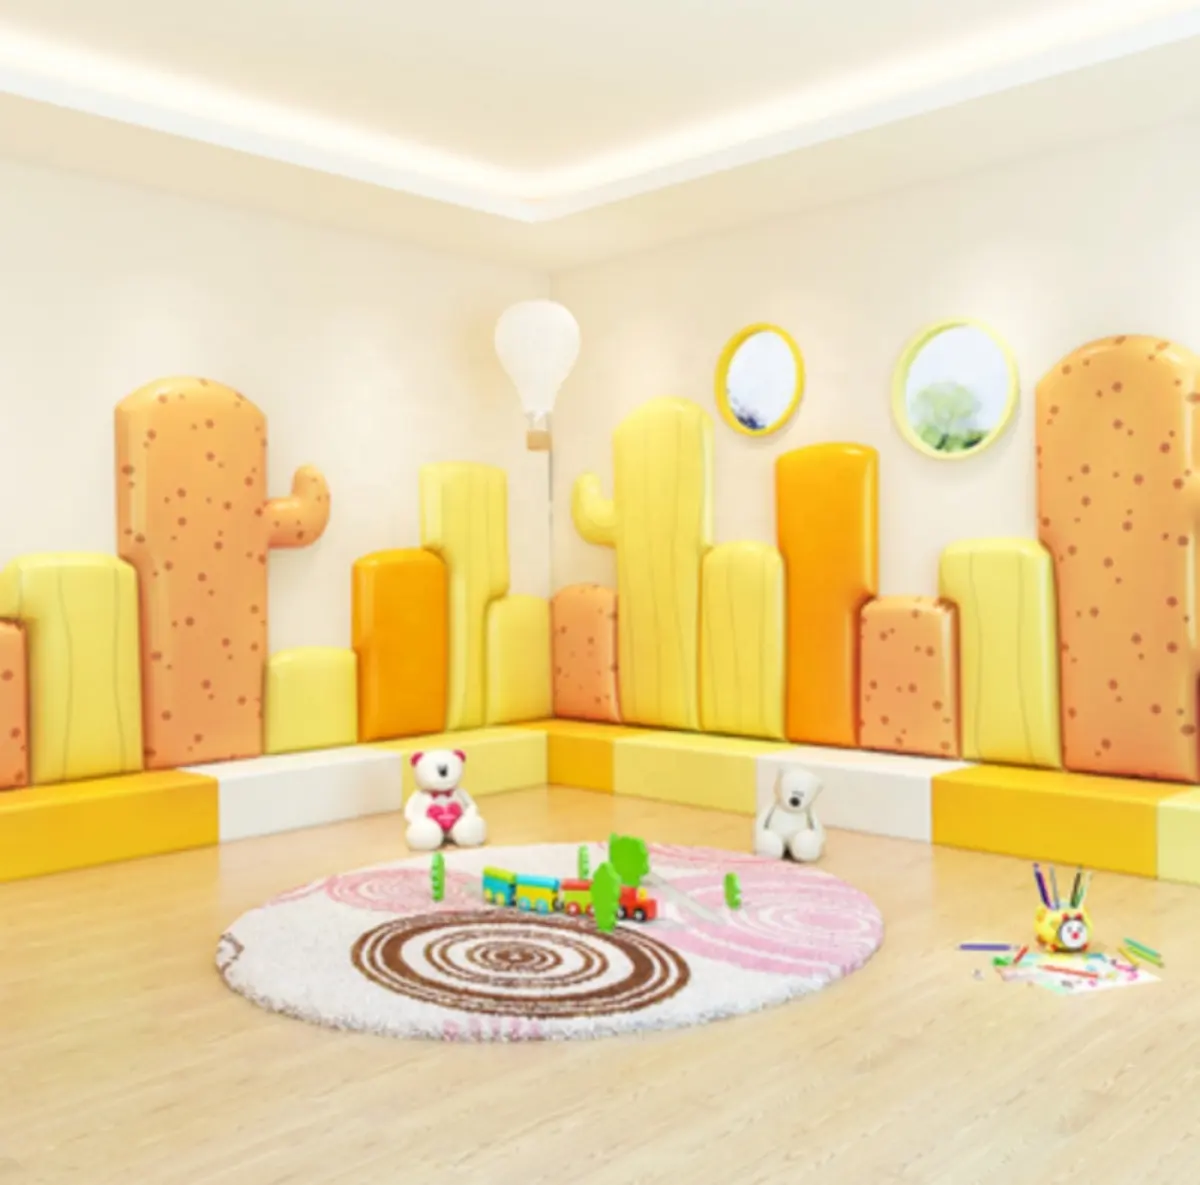 China Hochwertiges PU-Leder material Kinderzimmer 3D Cactus Soft Wall Padding für Kindertag stätten und Kindergarten schule